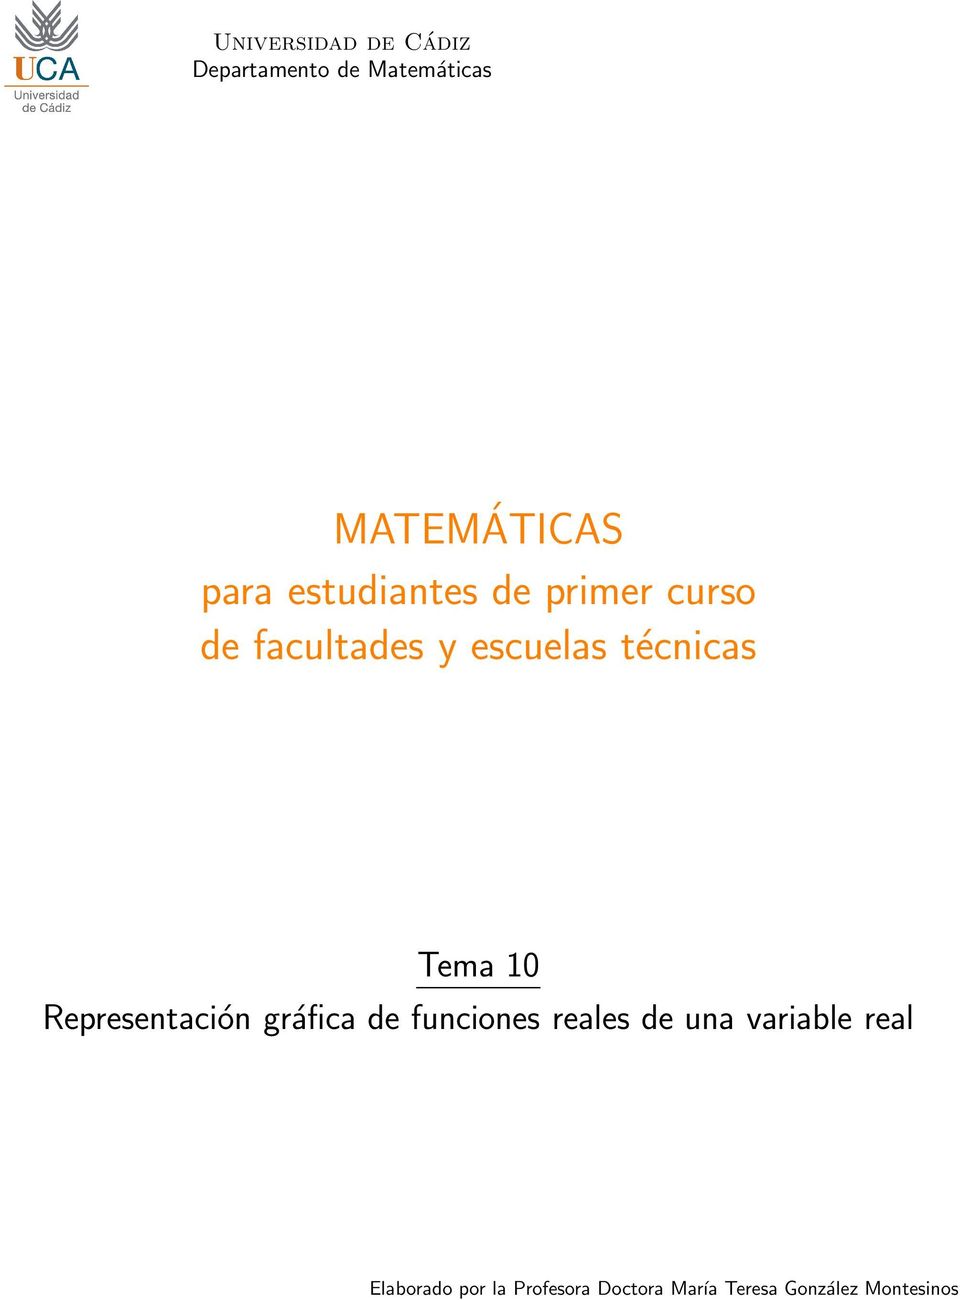 Tema Representación gráfica de funciones reales de una variable